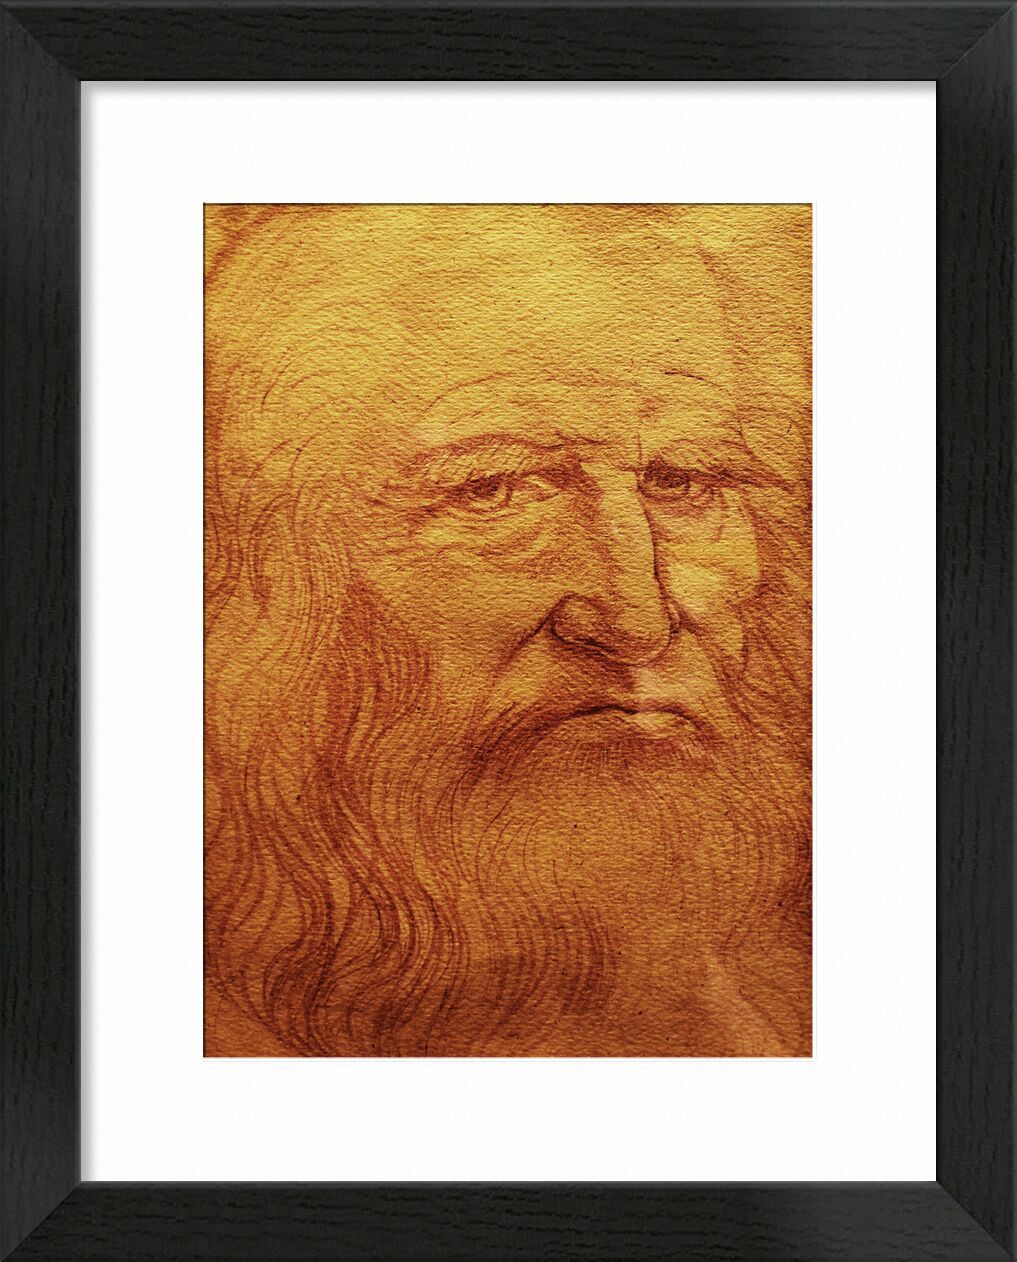 Self-portrait - Leonardo da Vinci von Bildende Kunst, Prodi Art, Kreide, Zeichnung, Selbstporträt, Leonard de Vinci